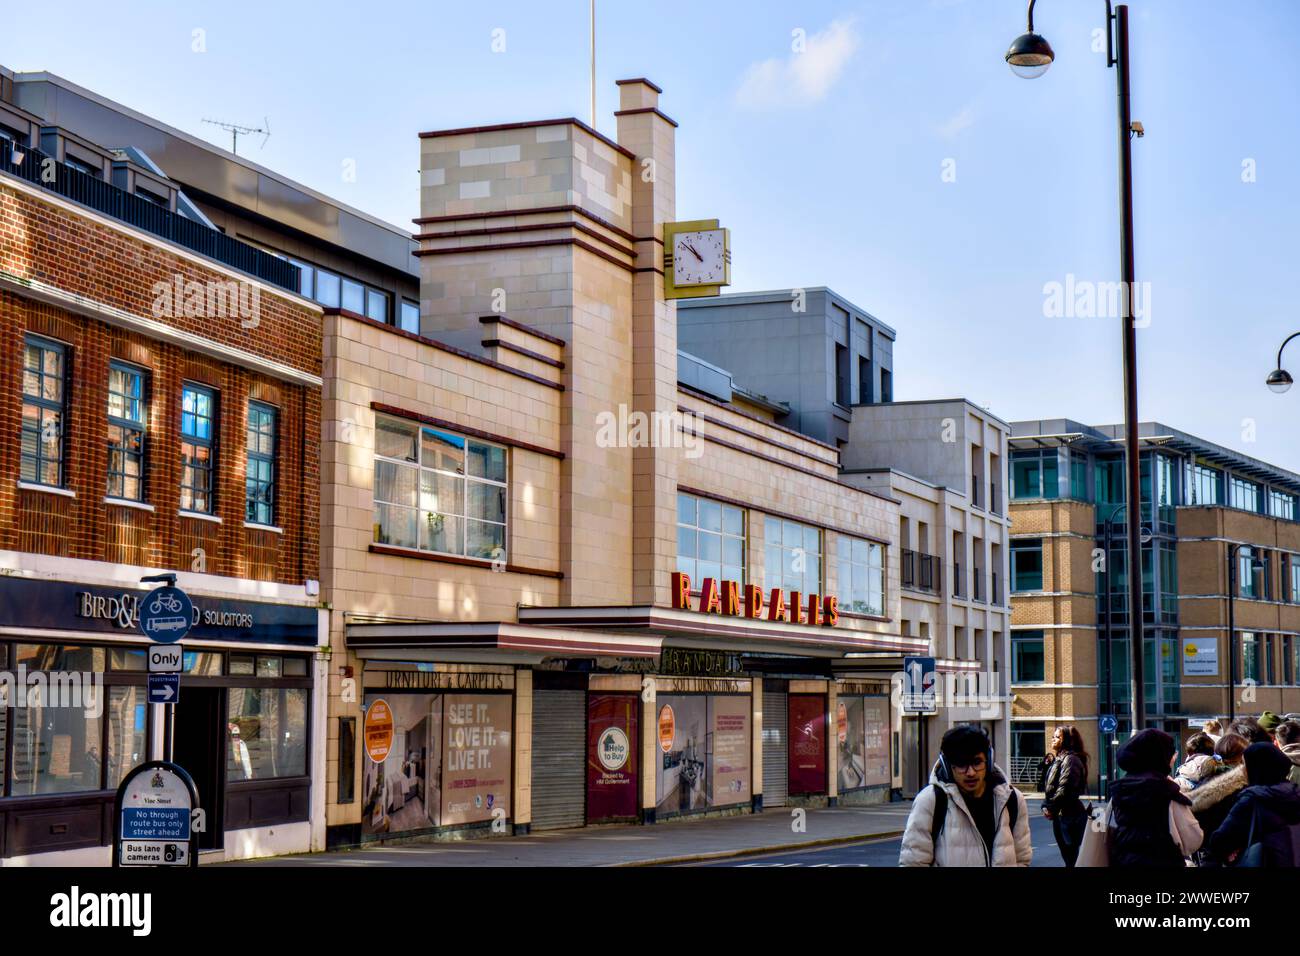 Randall’s Department Store maintenant fermé, Uxbridge, Borough of Hillingdon, Londres, Angleterre, ROYAUME-UNI Banque D'Images